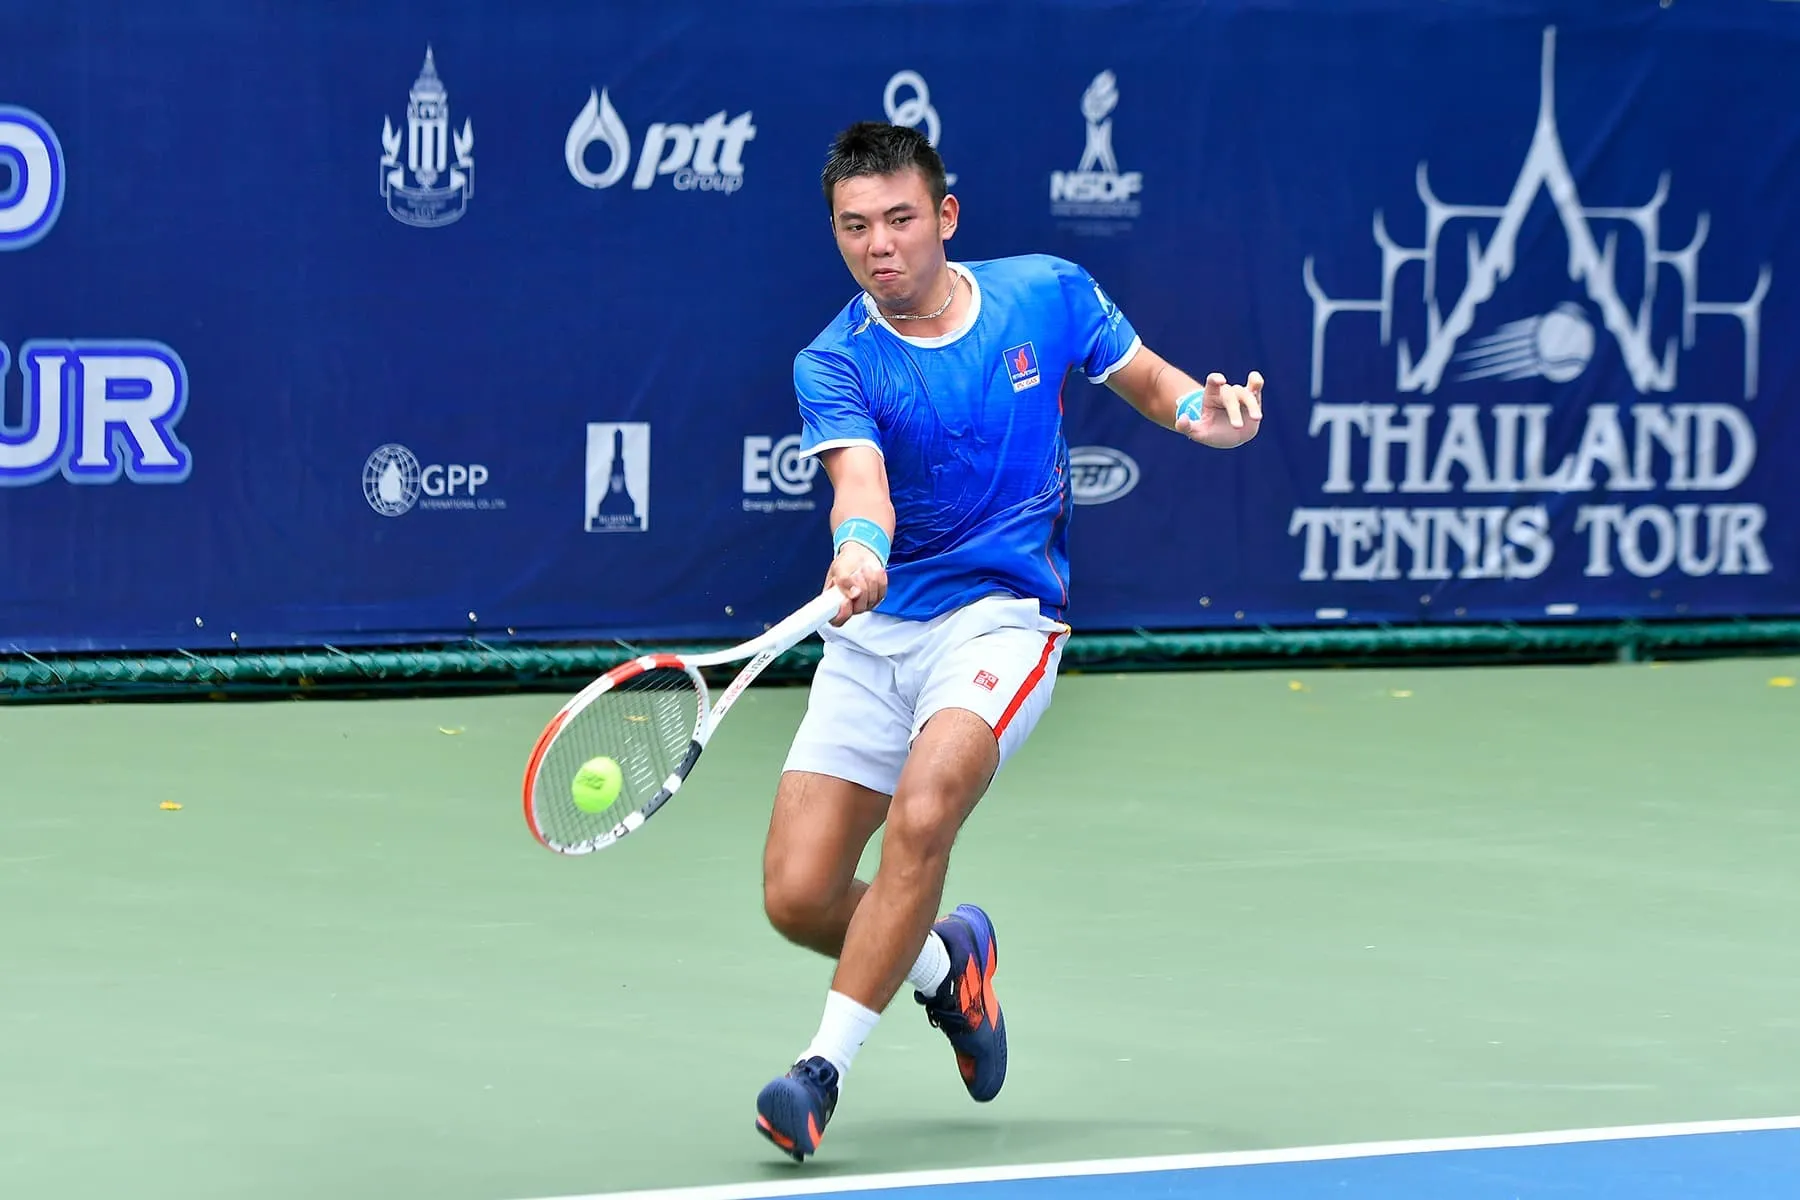 Alcaraz chiếm đỉnh bảng ATP - Lý Hoàng Nam tiếp tục tạo nên kỷ lục